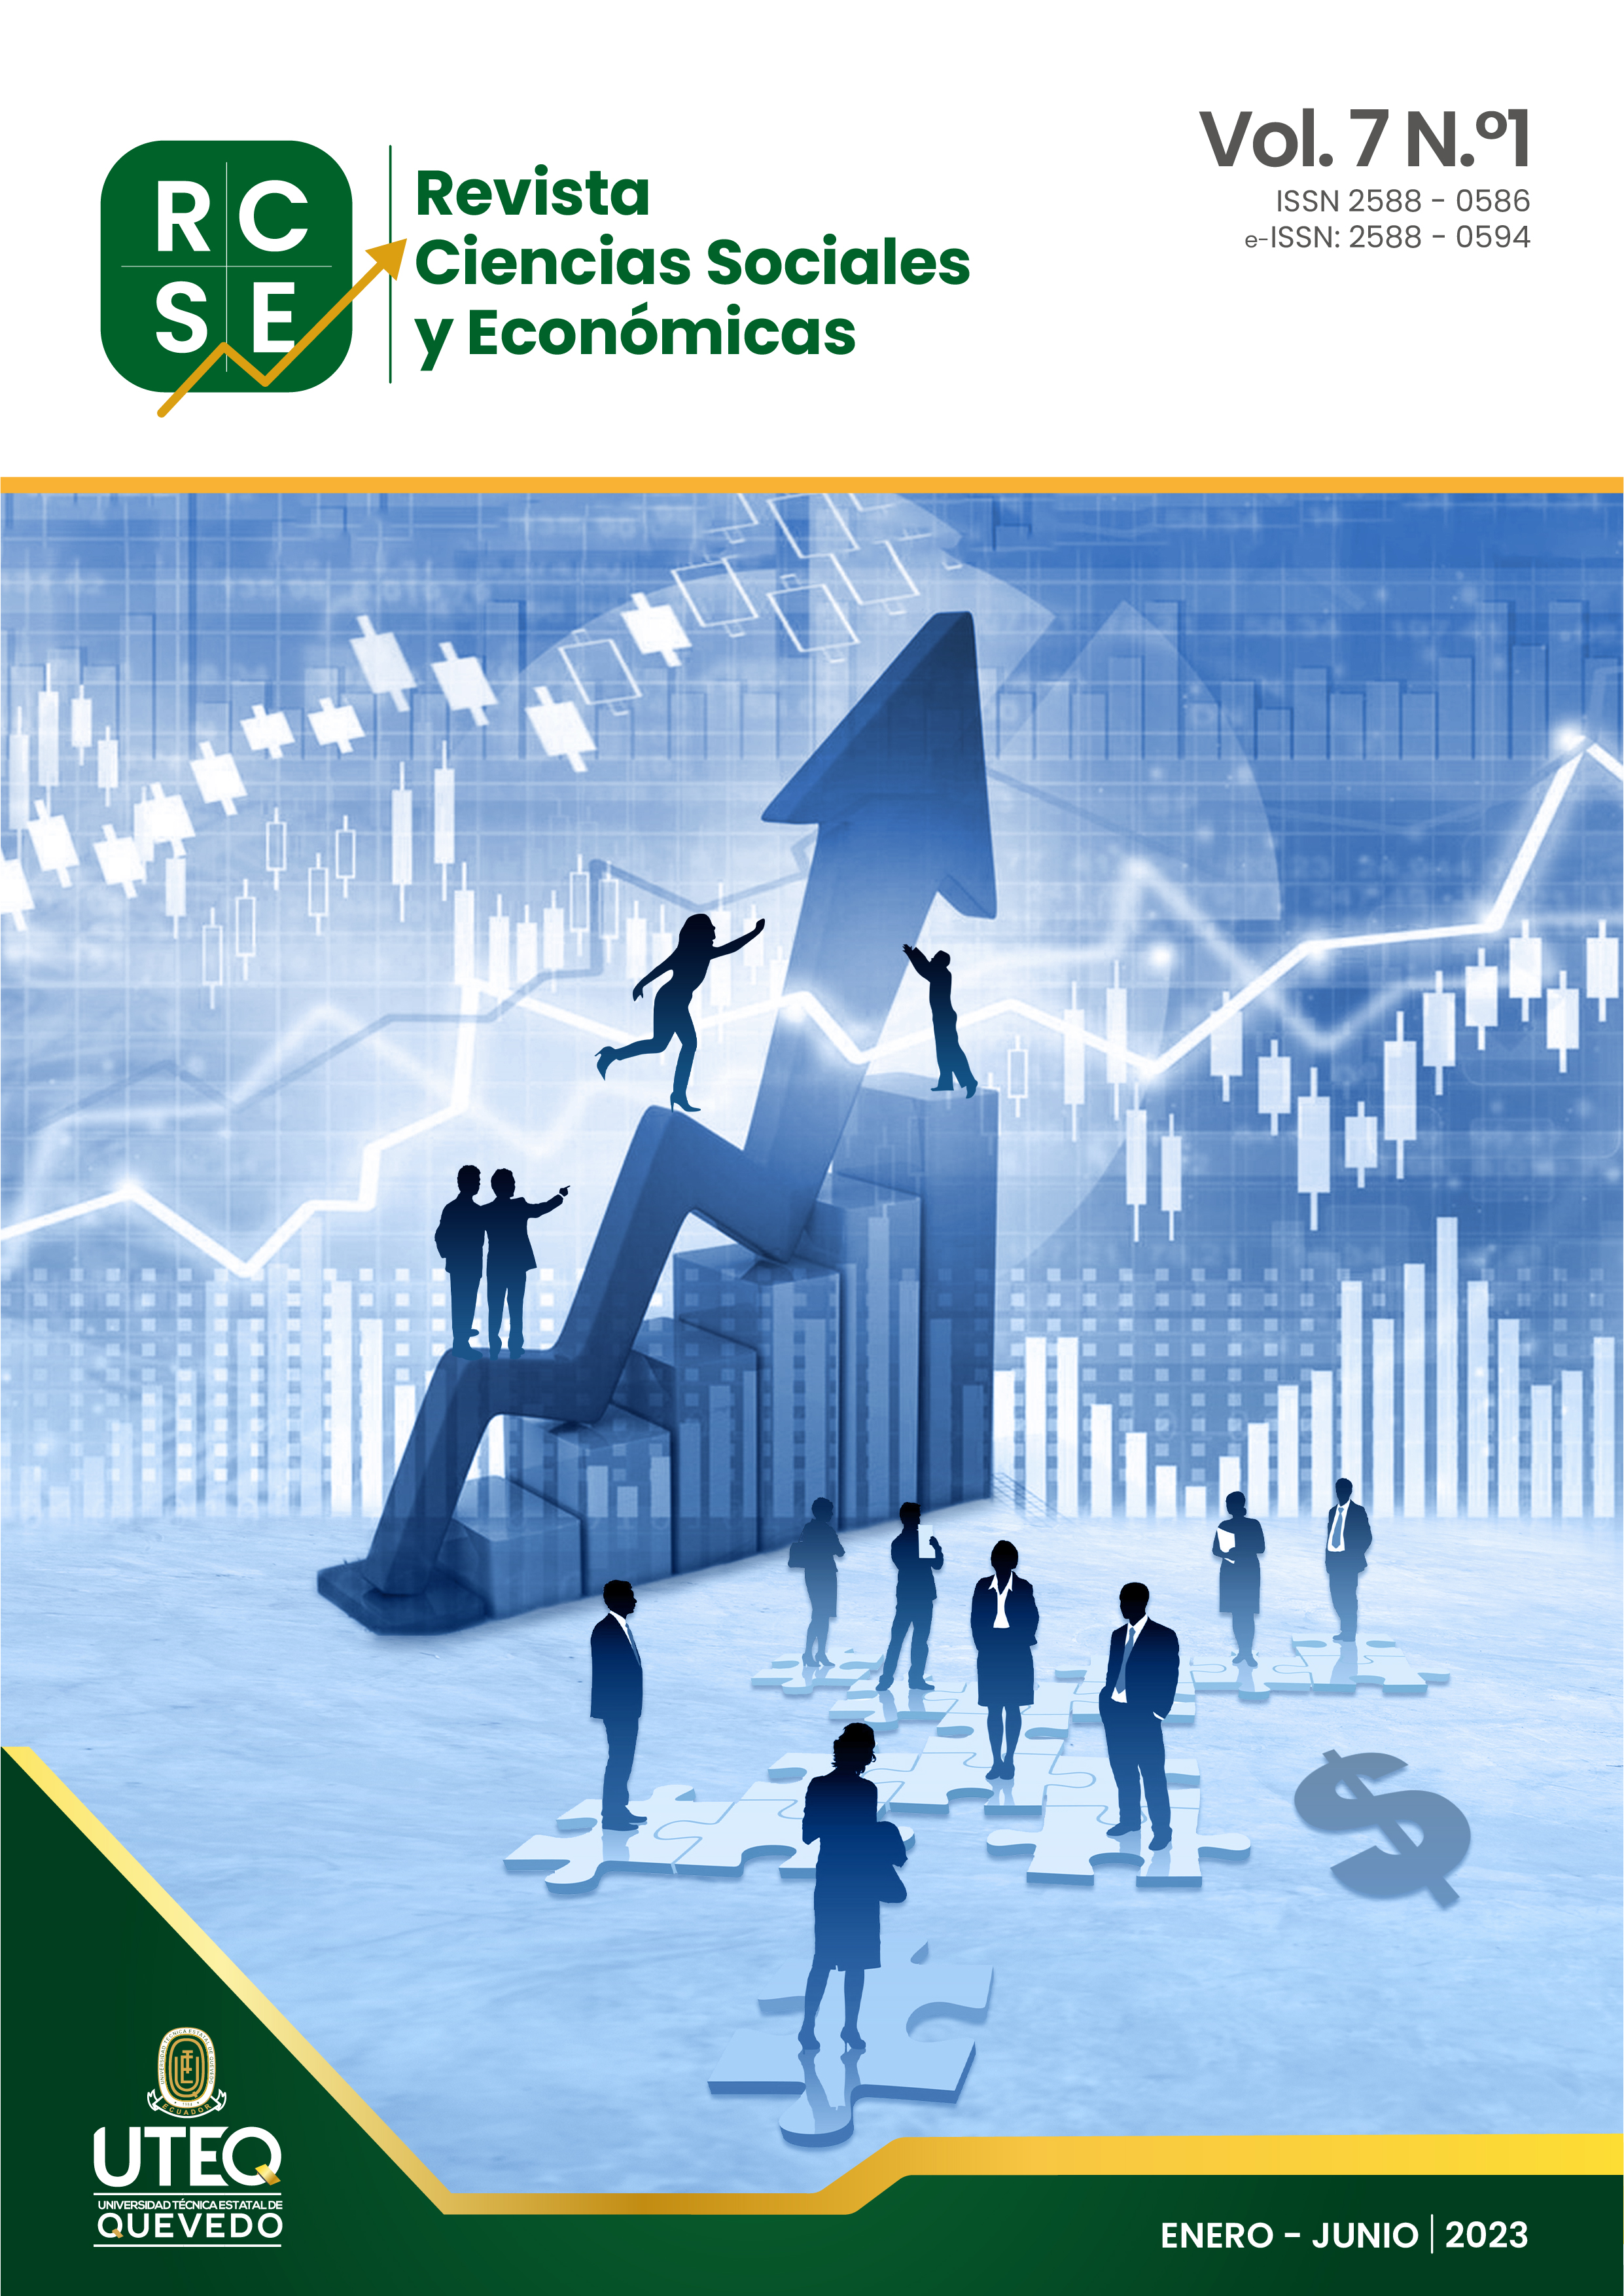 					View Vol. 7 No. 1 (2023): Ciencias Sociales y Económicas (Enero a Junio 2023)
				